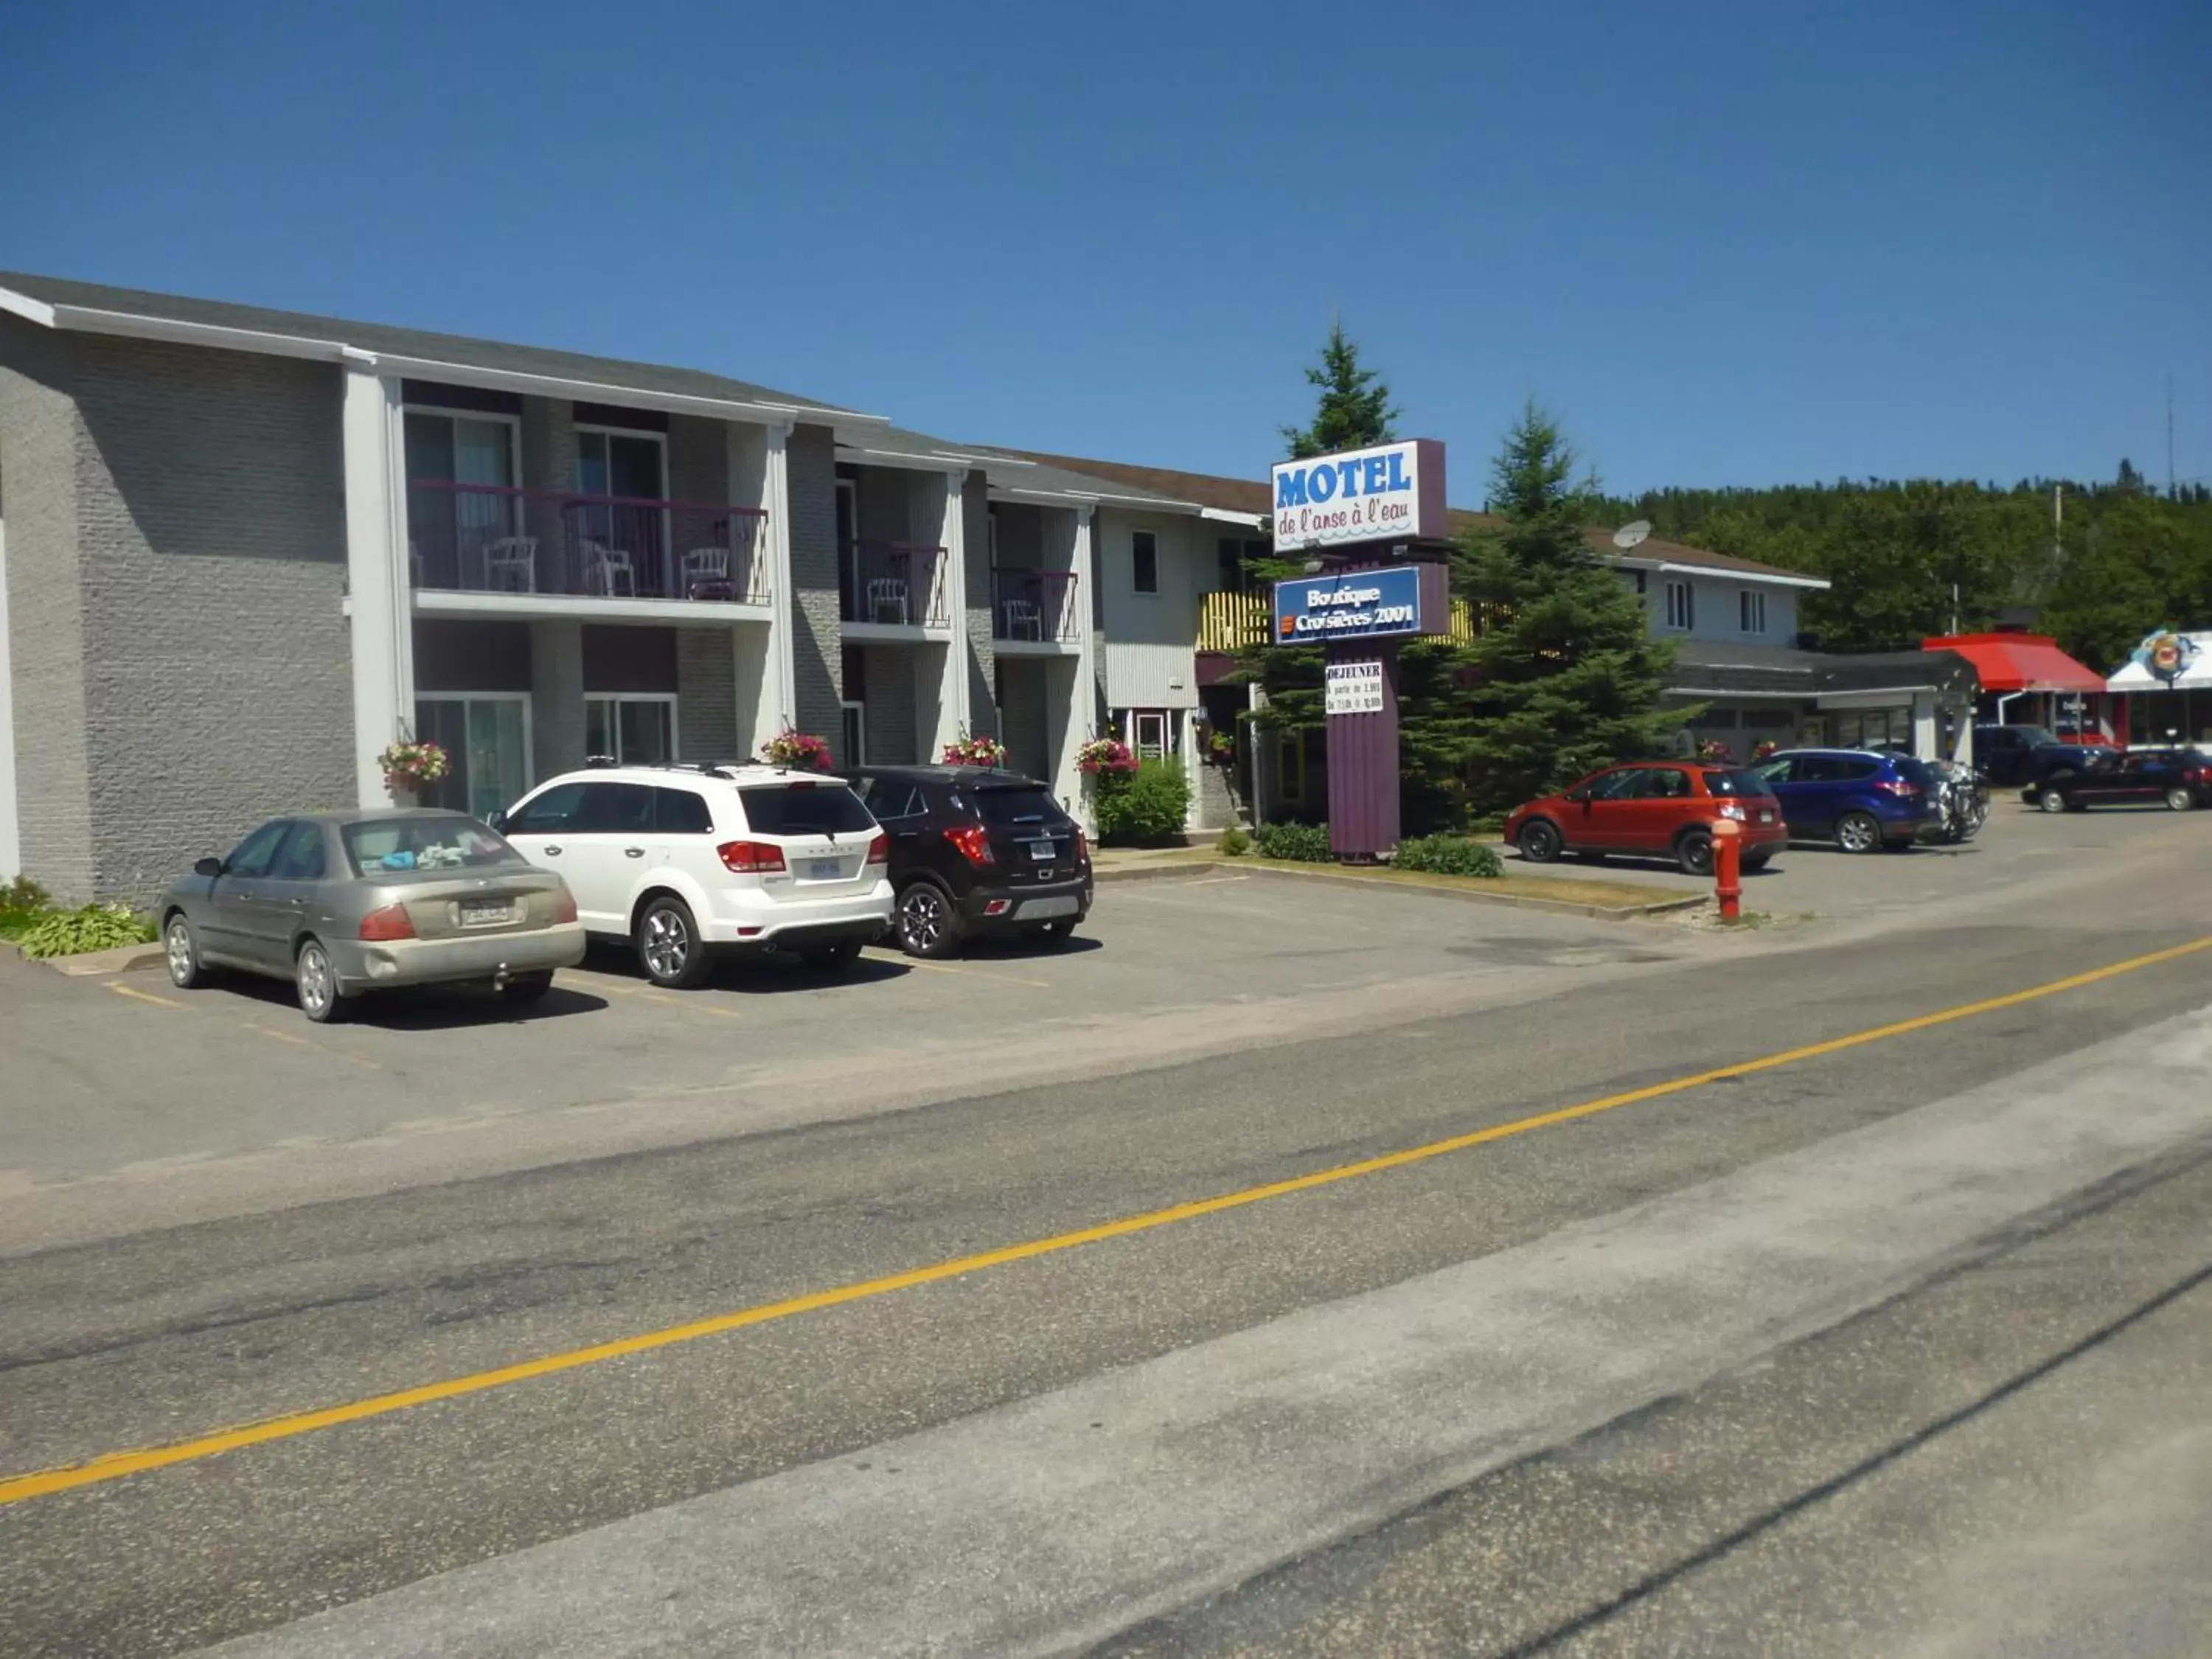 Facade/entrance, Property Building in Motel de l'Anse a l'Eau